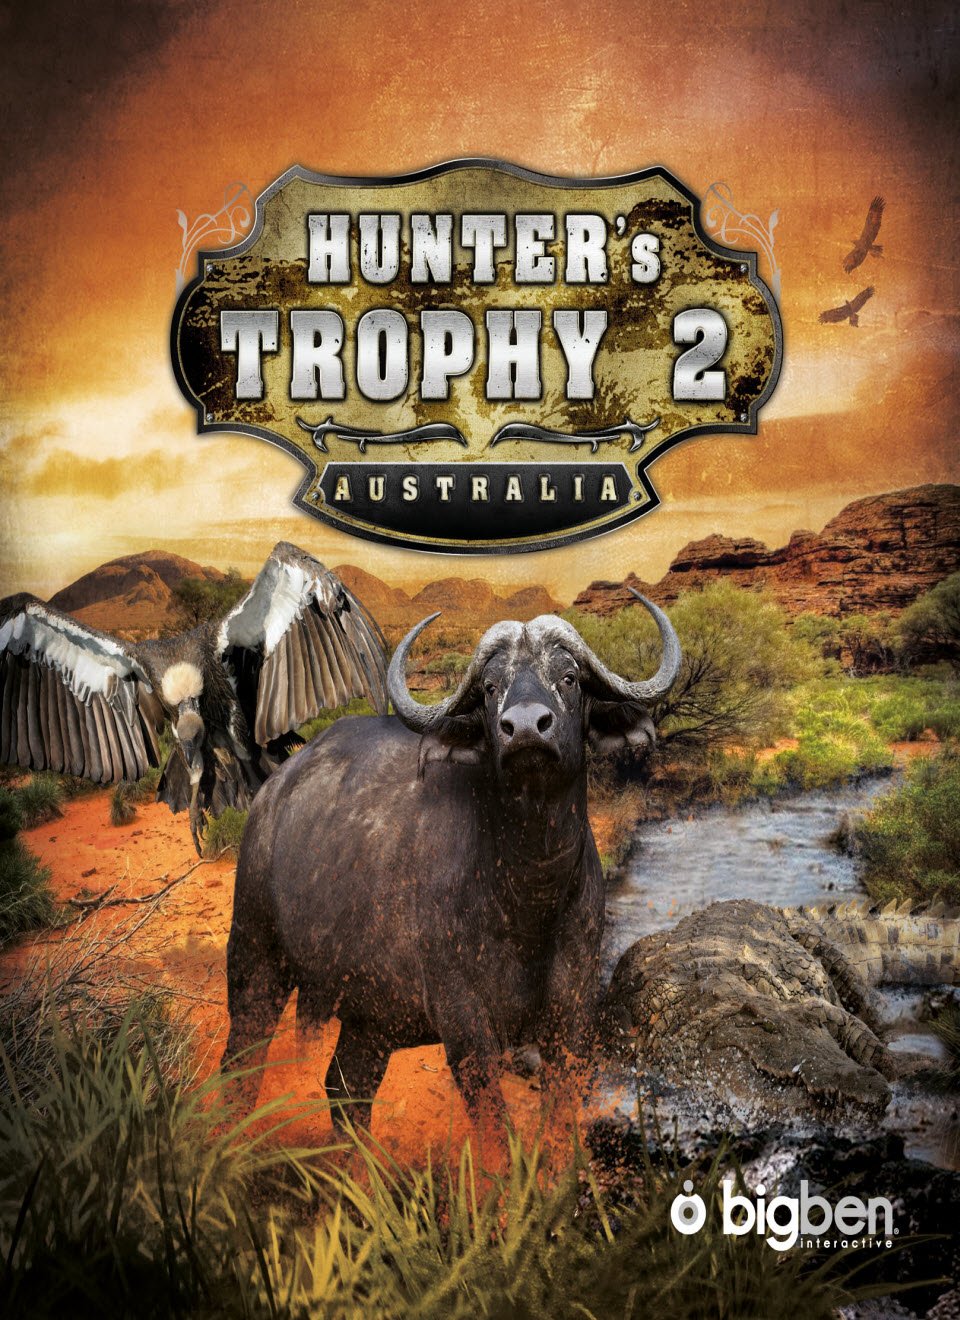 rocky mountain trophy hunter 2003